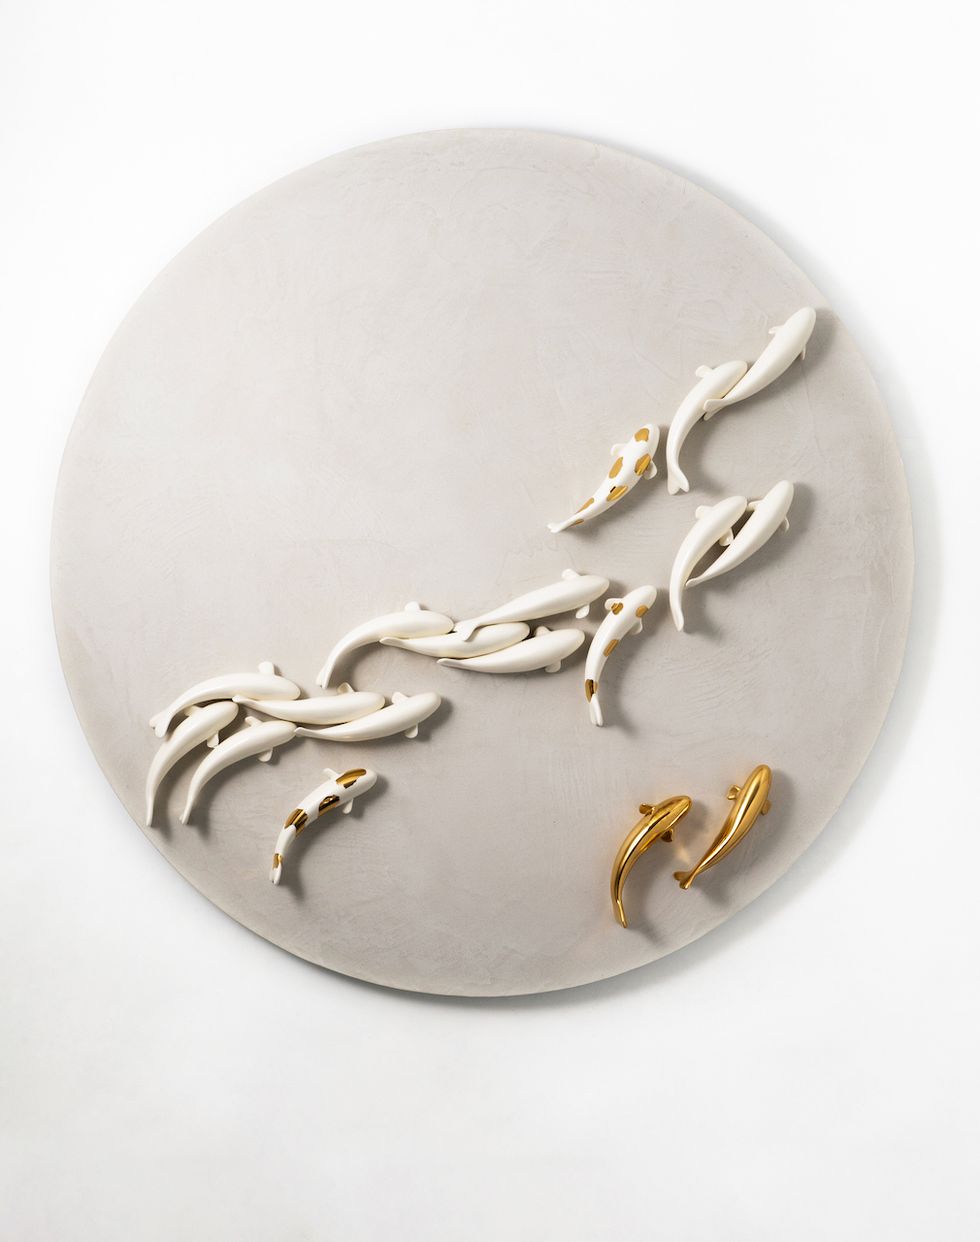 米其林餐廳指定餐瓷藝術家！劉子瑜首度在台個展，展現飲食文化與藝術融合的最高境界